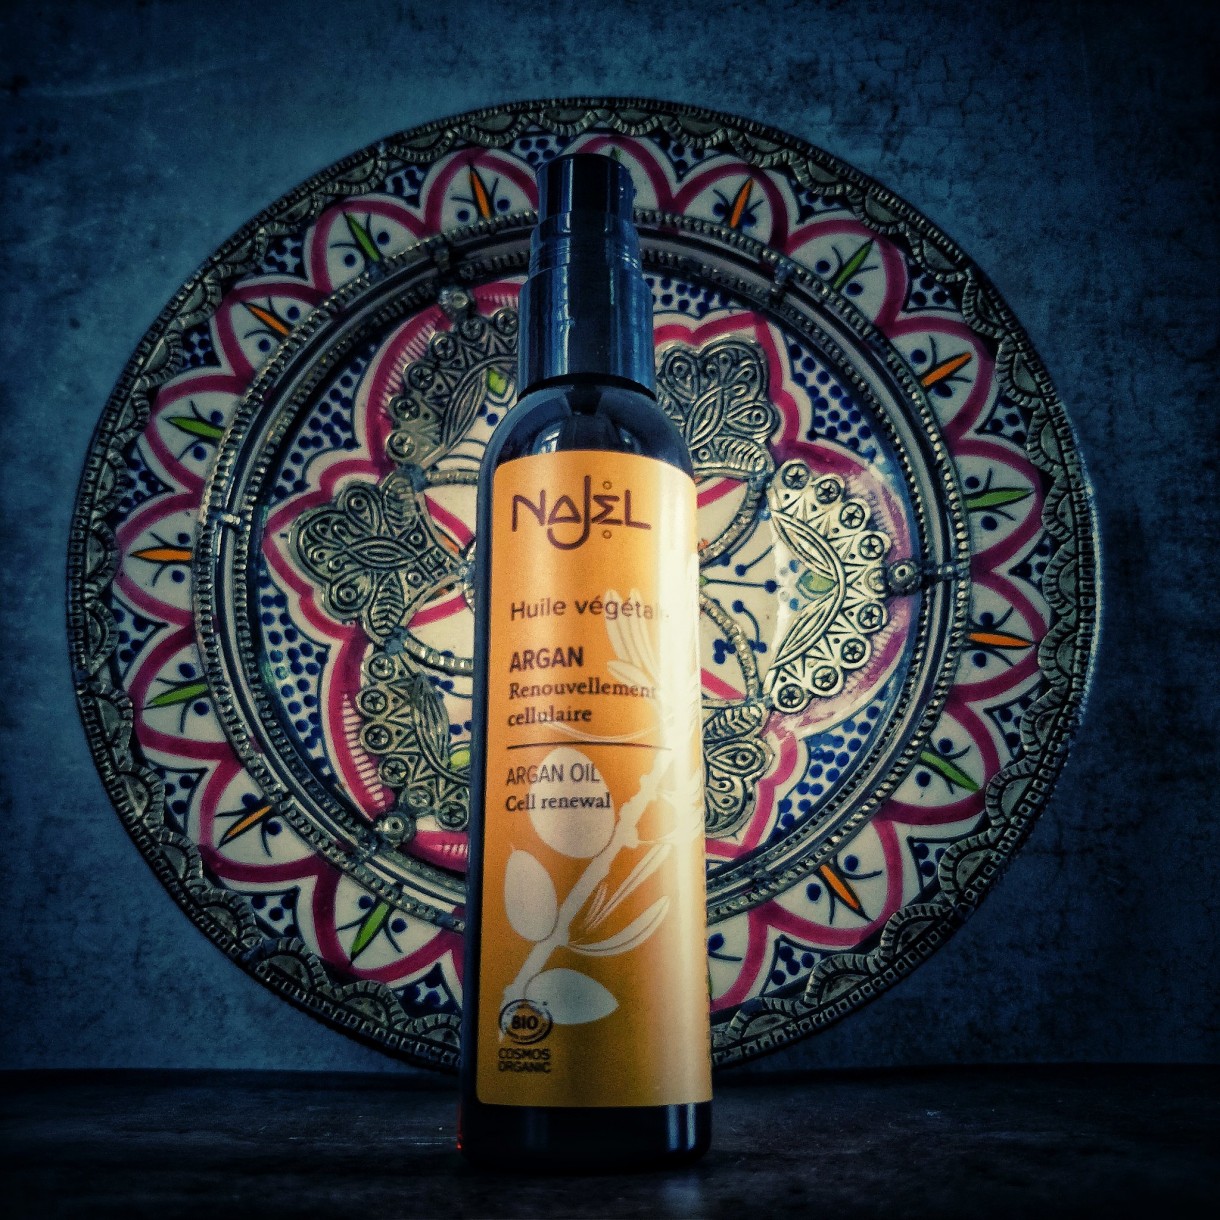 Drogocenny olej arganowy, nazywany złotem Berberów, otrzymywany jest z owoców drzewa arganowego, występującego w południowo-zachodniej części Maroka. Stanowi prawdziwy eliksir piękna dla skóry i zapewnia doskonałą pielęgnację włosom.